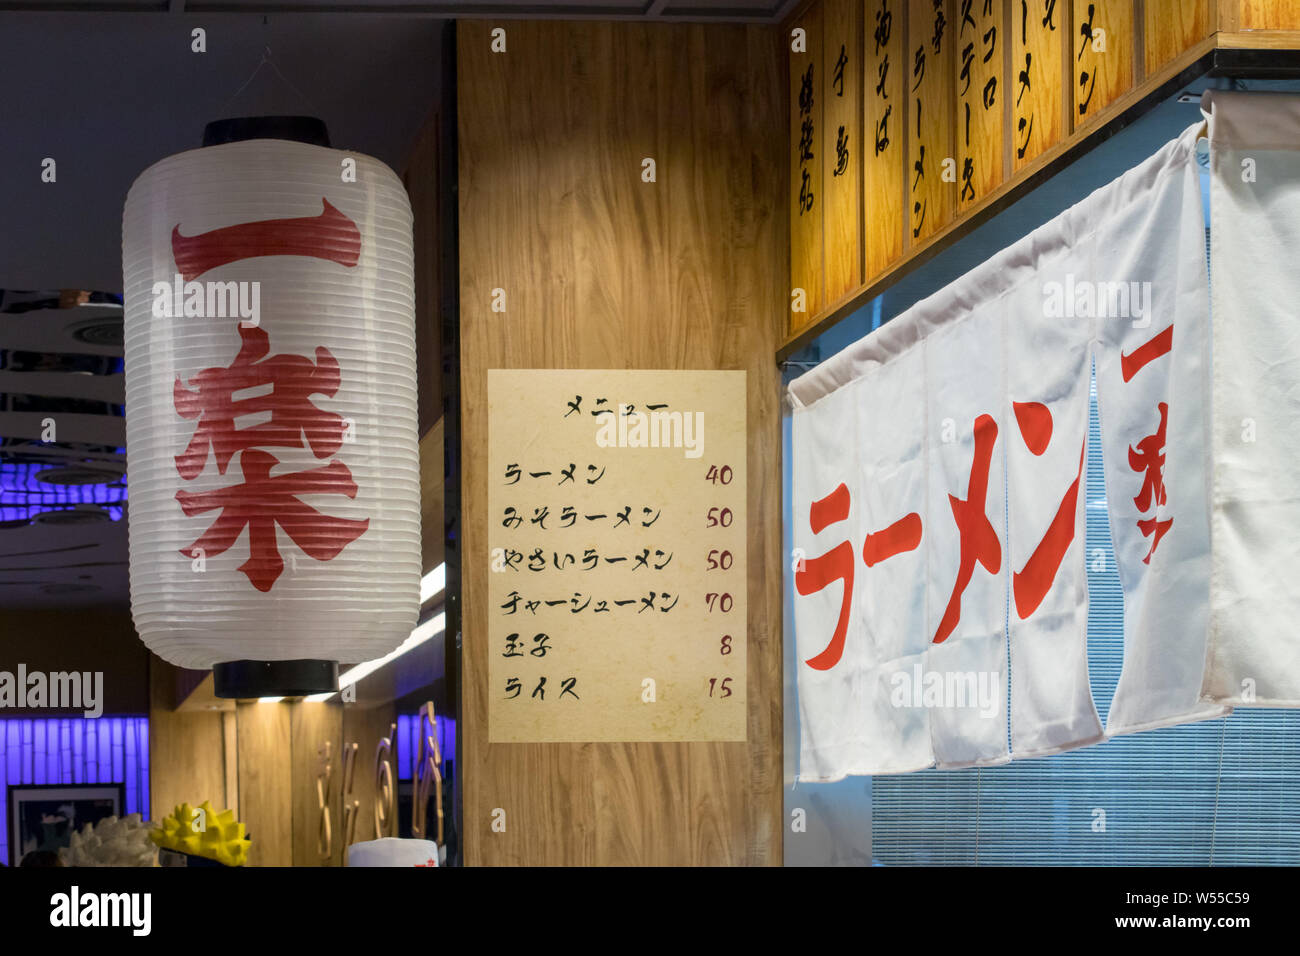 Ichikaru Ramen: El restaurante japonés real que inspiró el puesto